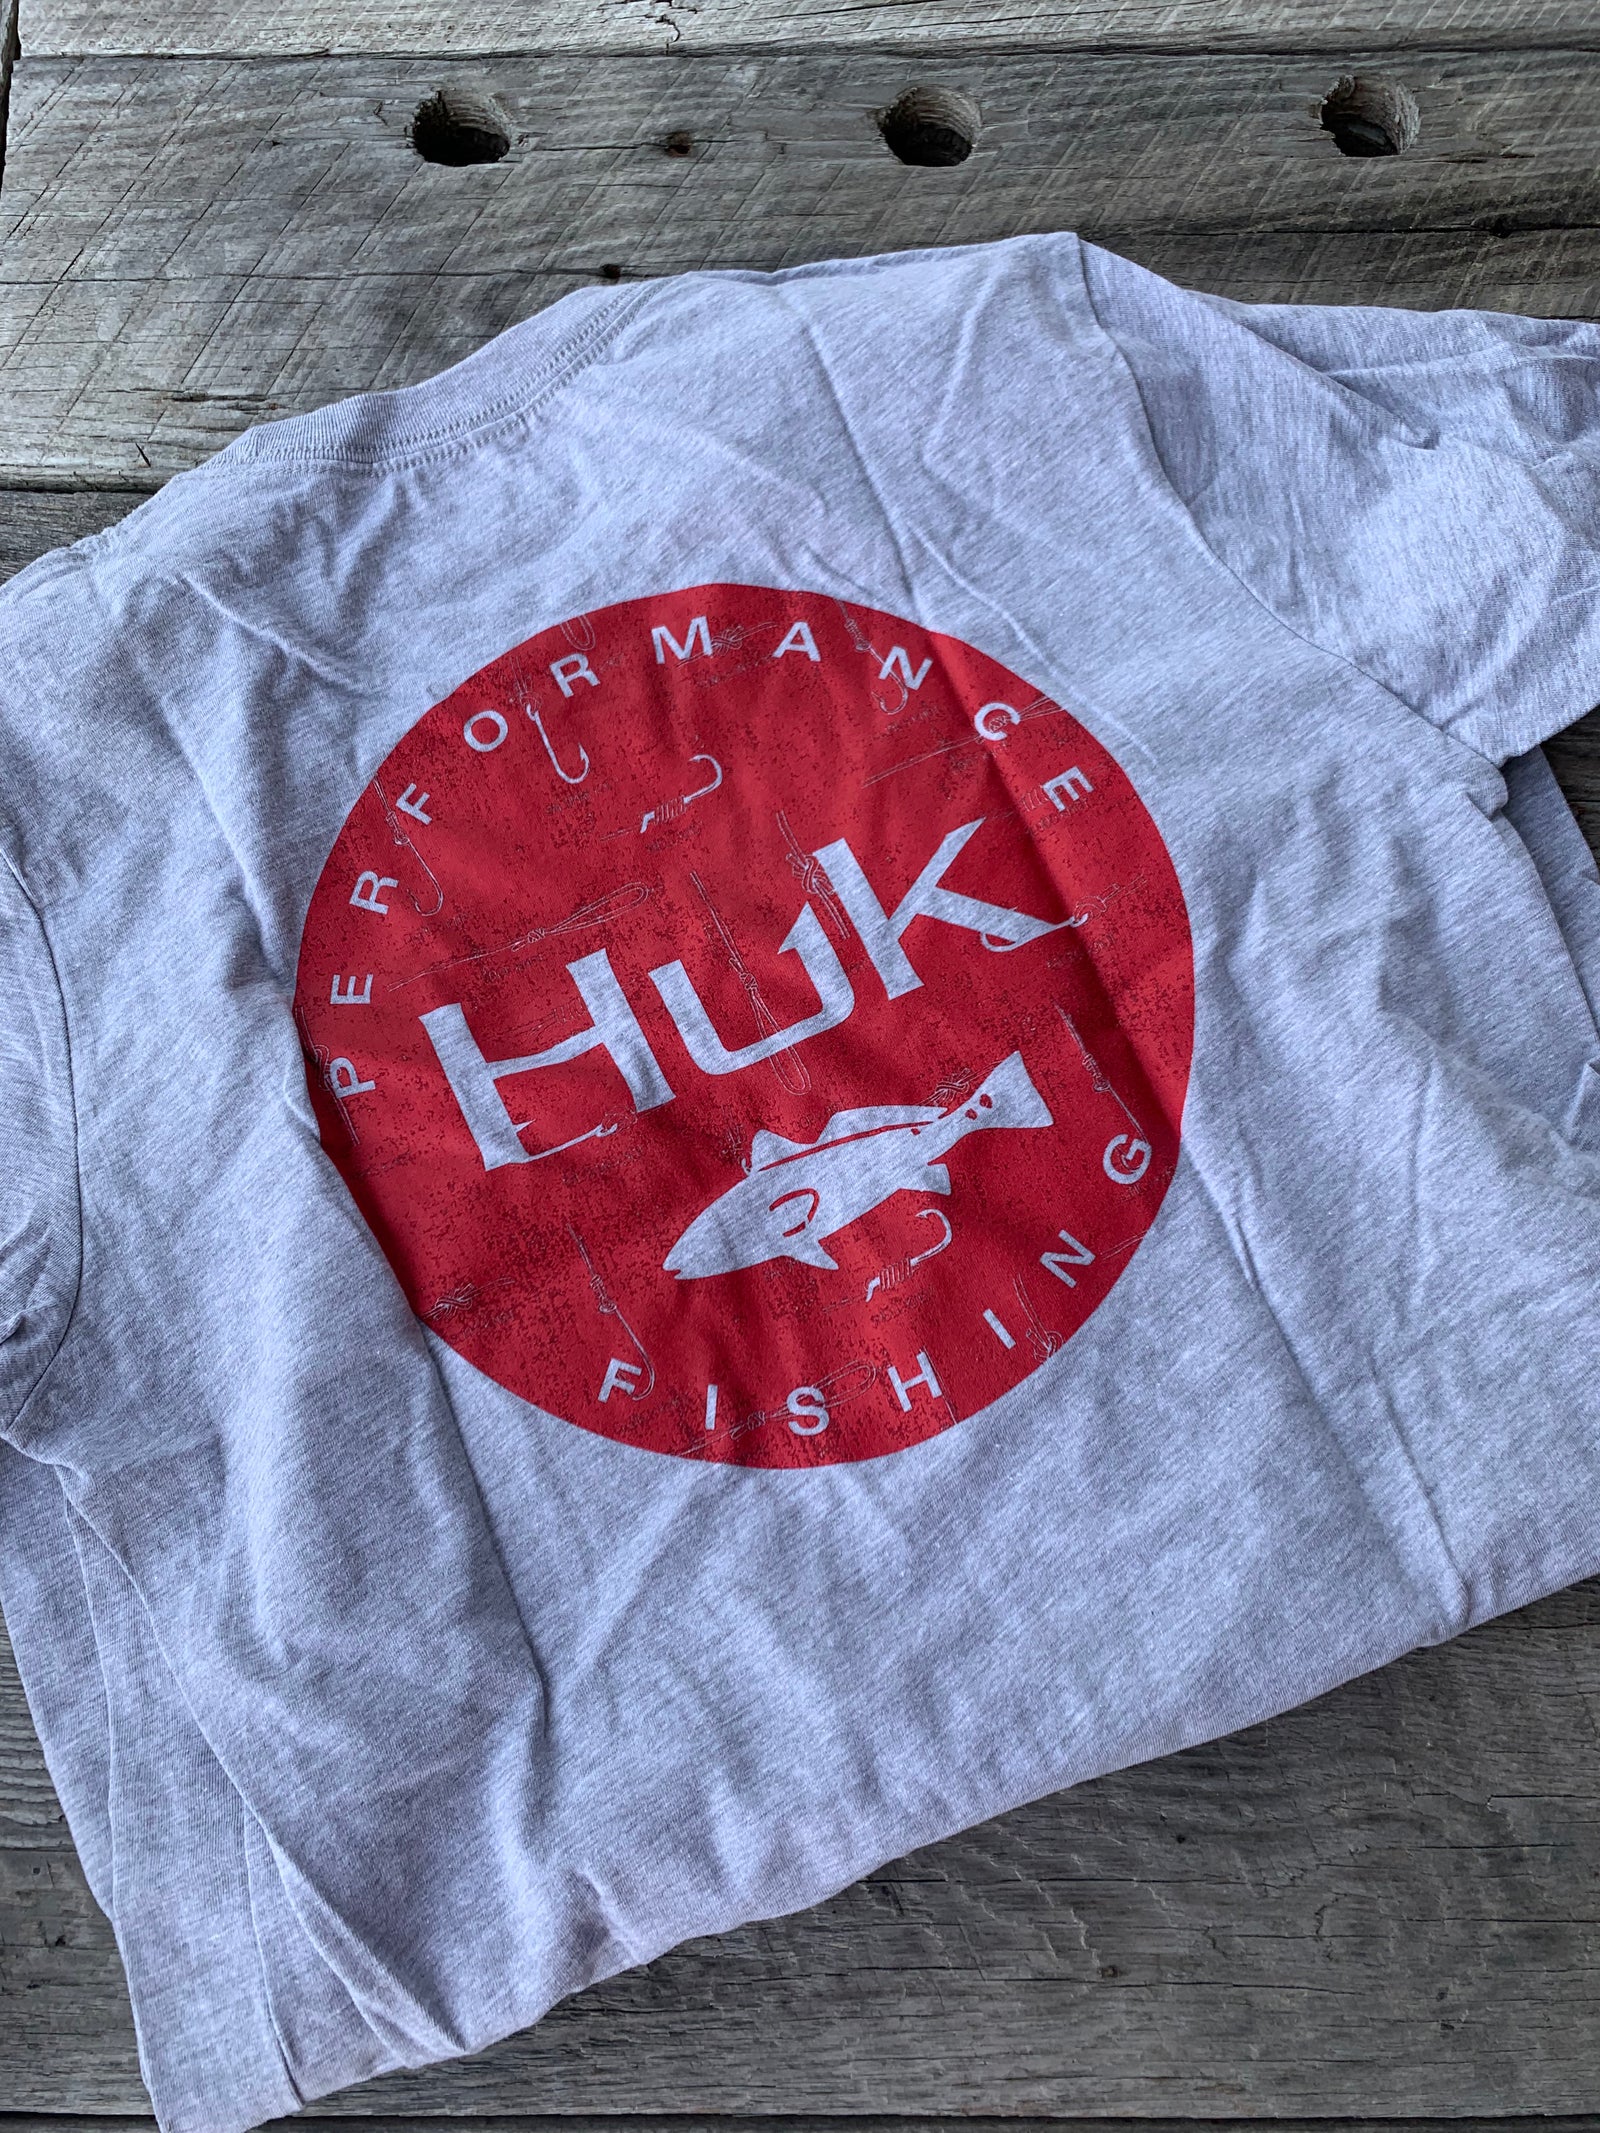 HUK HUK'D up Americana Pursuit Fishing Shirt - Bowtreader